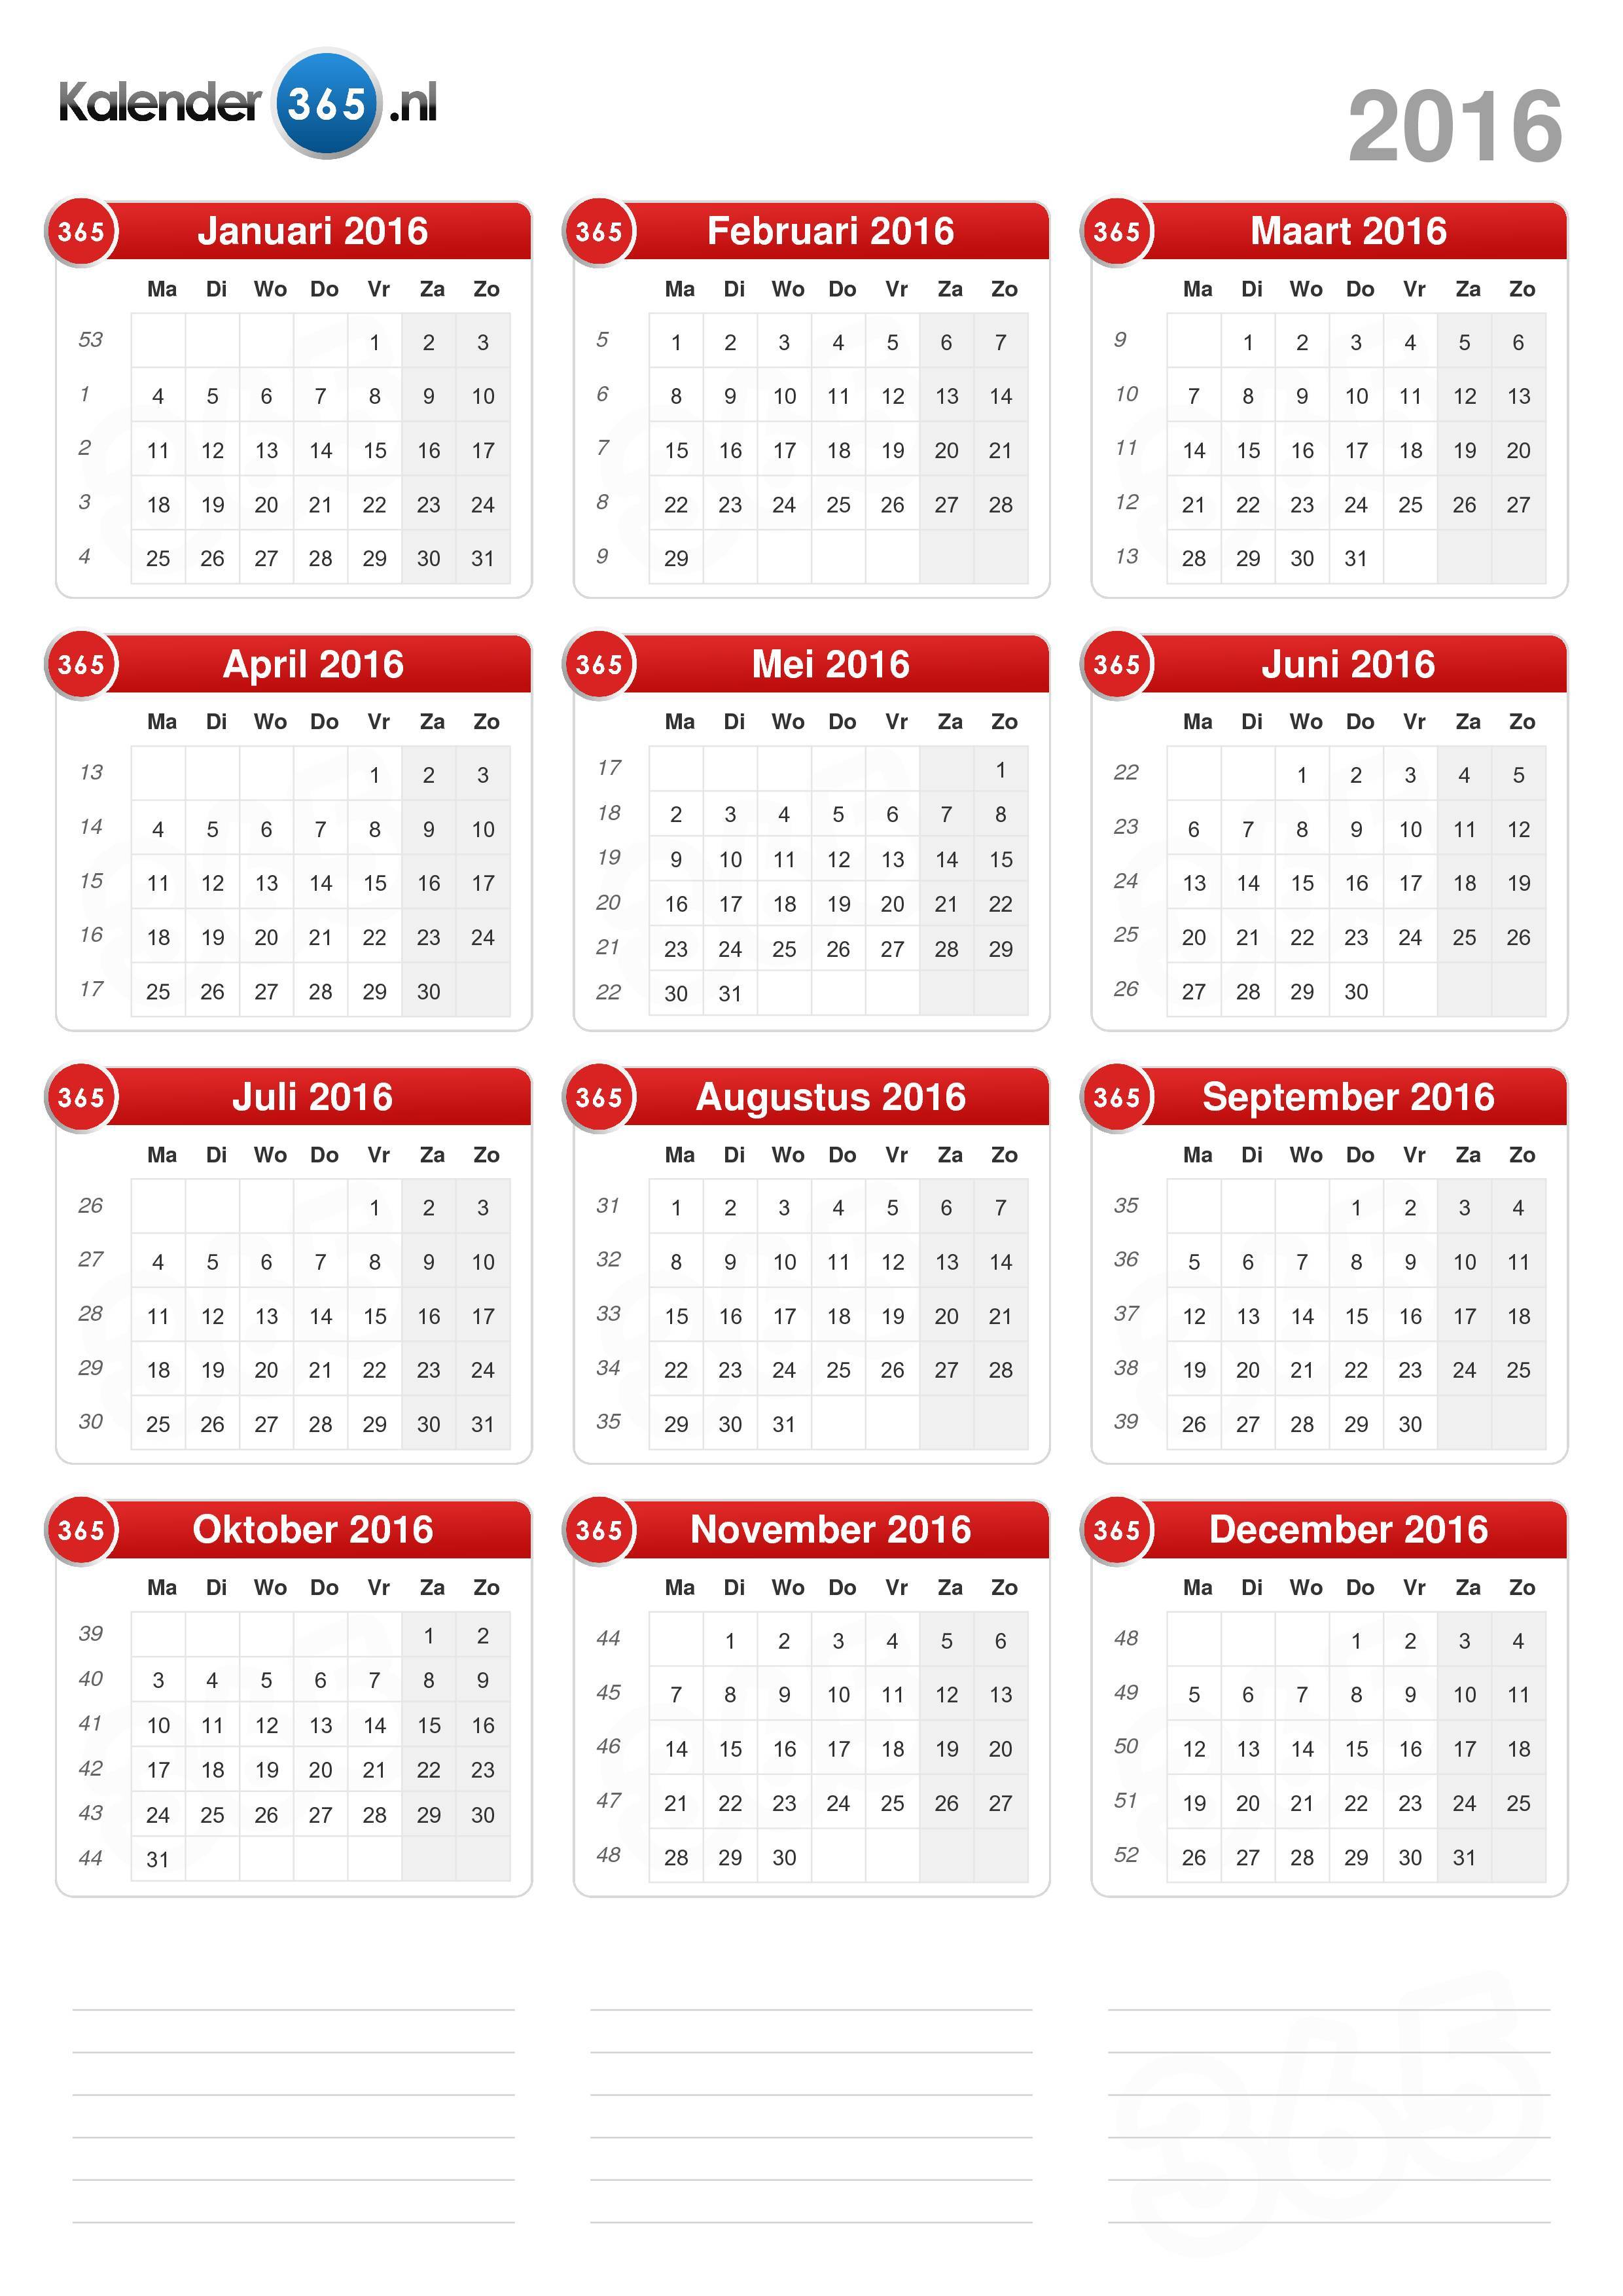 Kom langs om het te weten partij besteden Kalender 2016